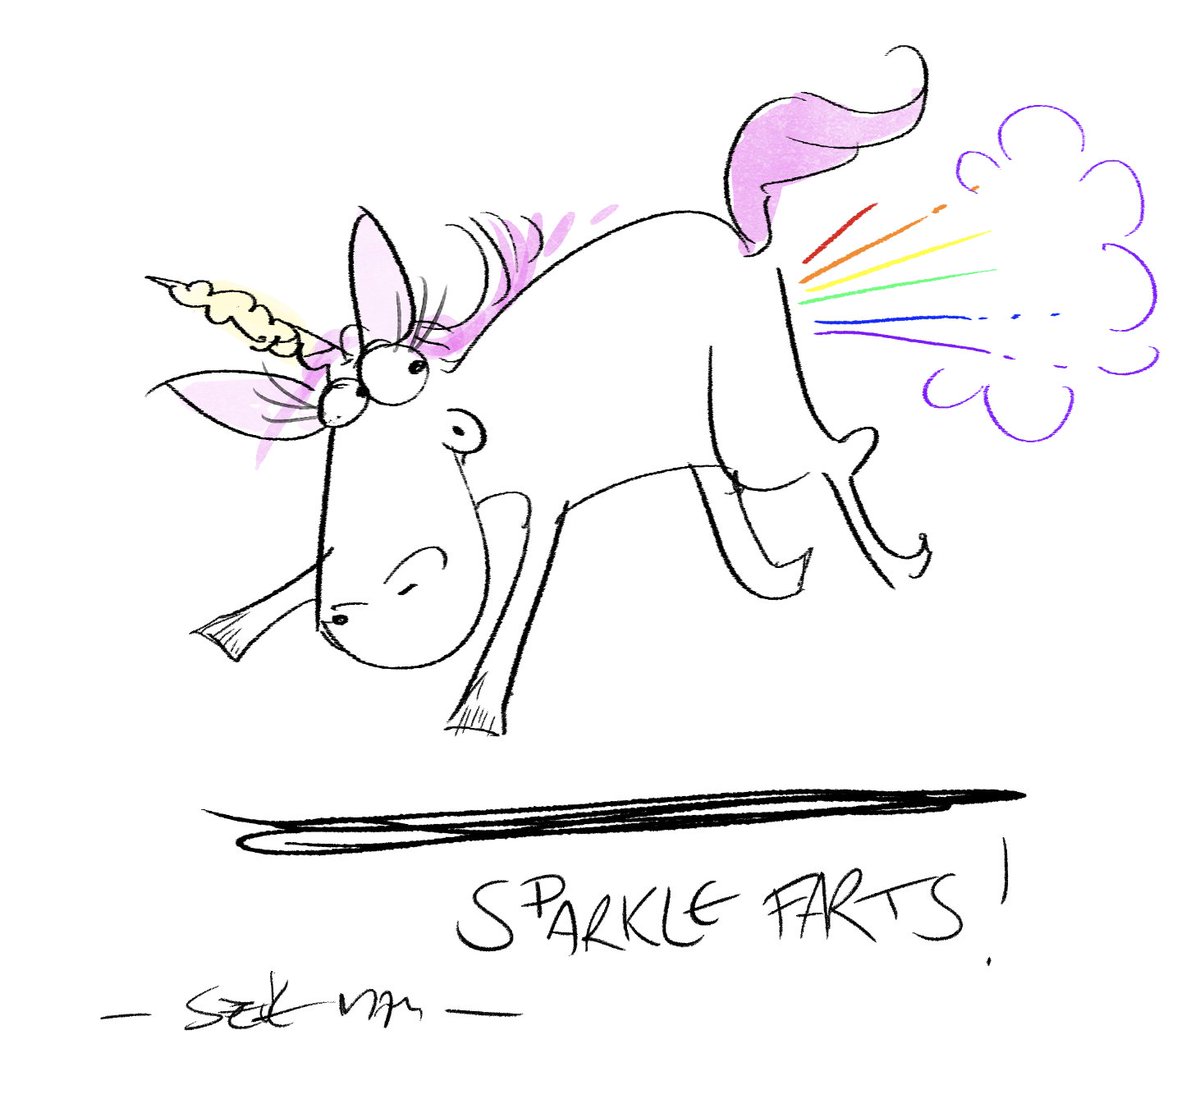 Introducing Sparkle Farts the flatulent unicorn!